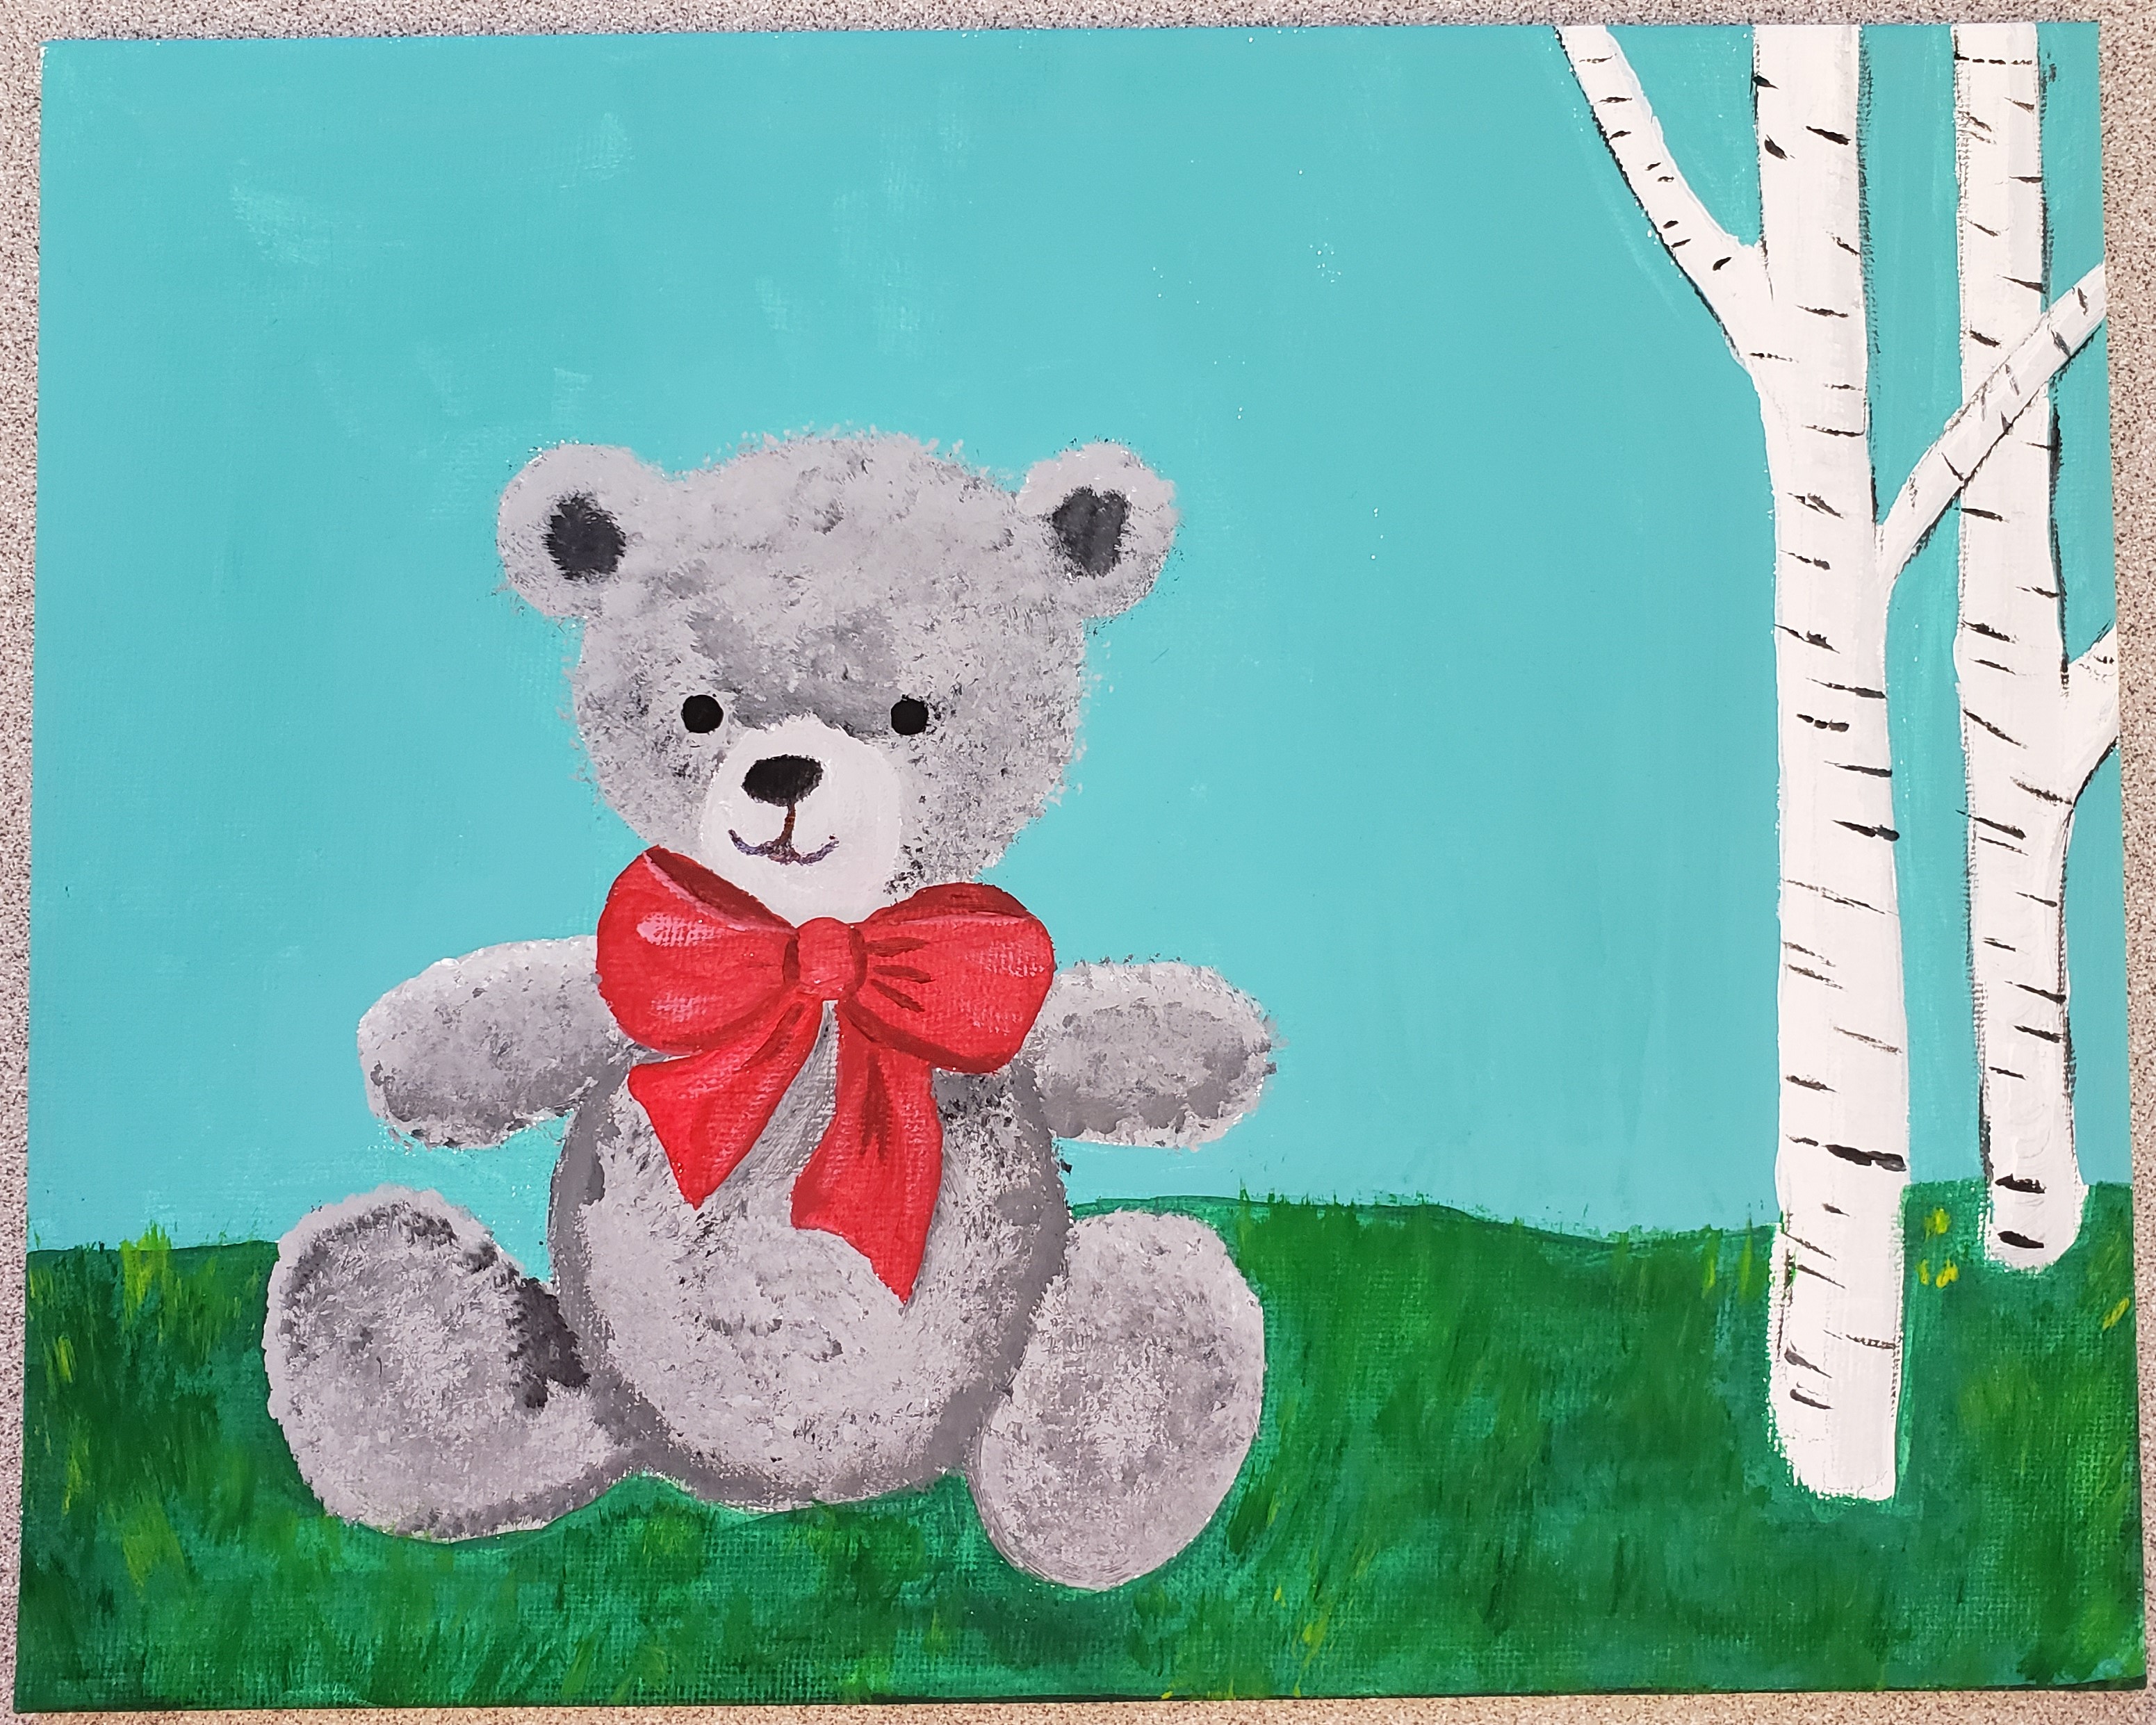 Teddy bear on grass